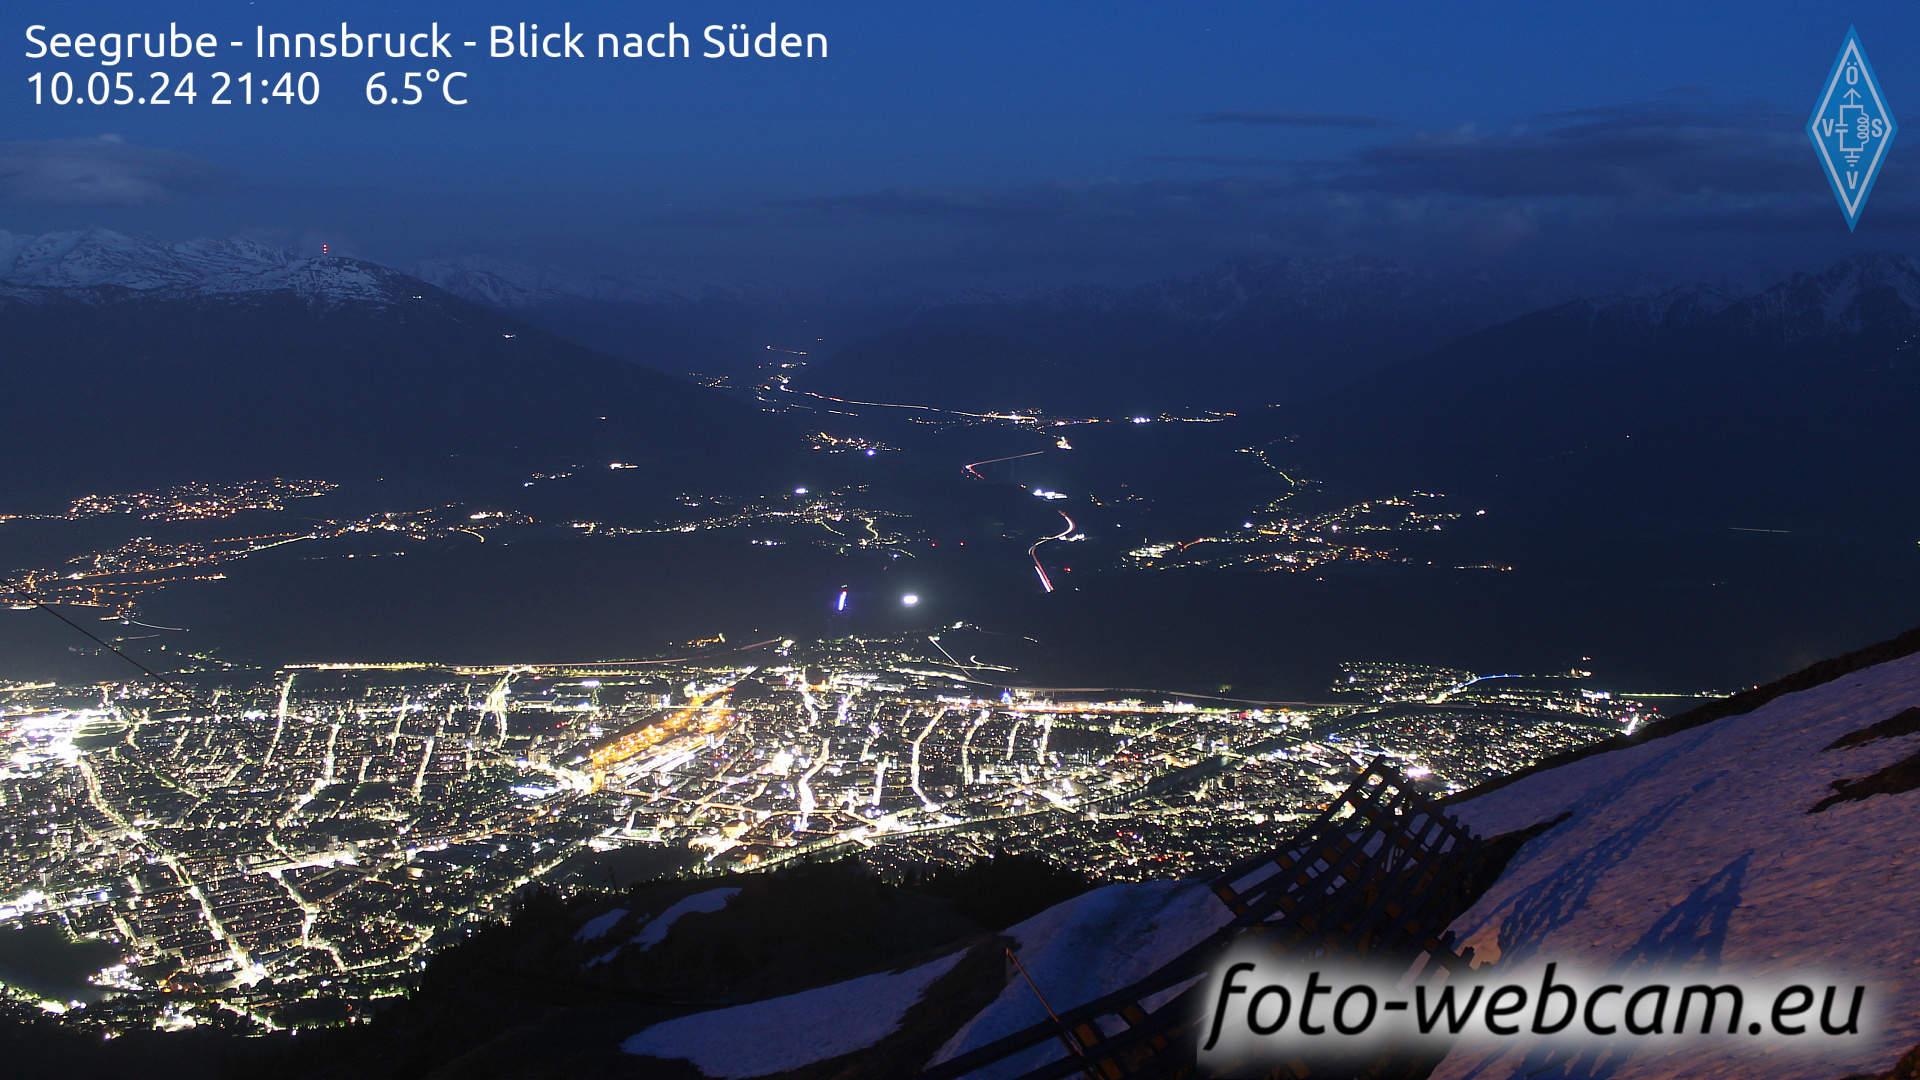 Innsbruck Dom. 21:48